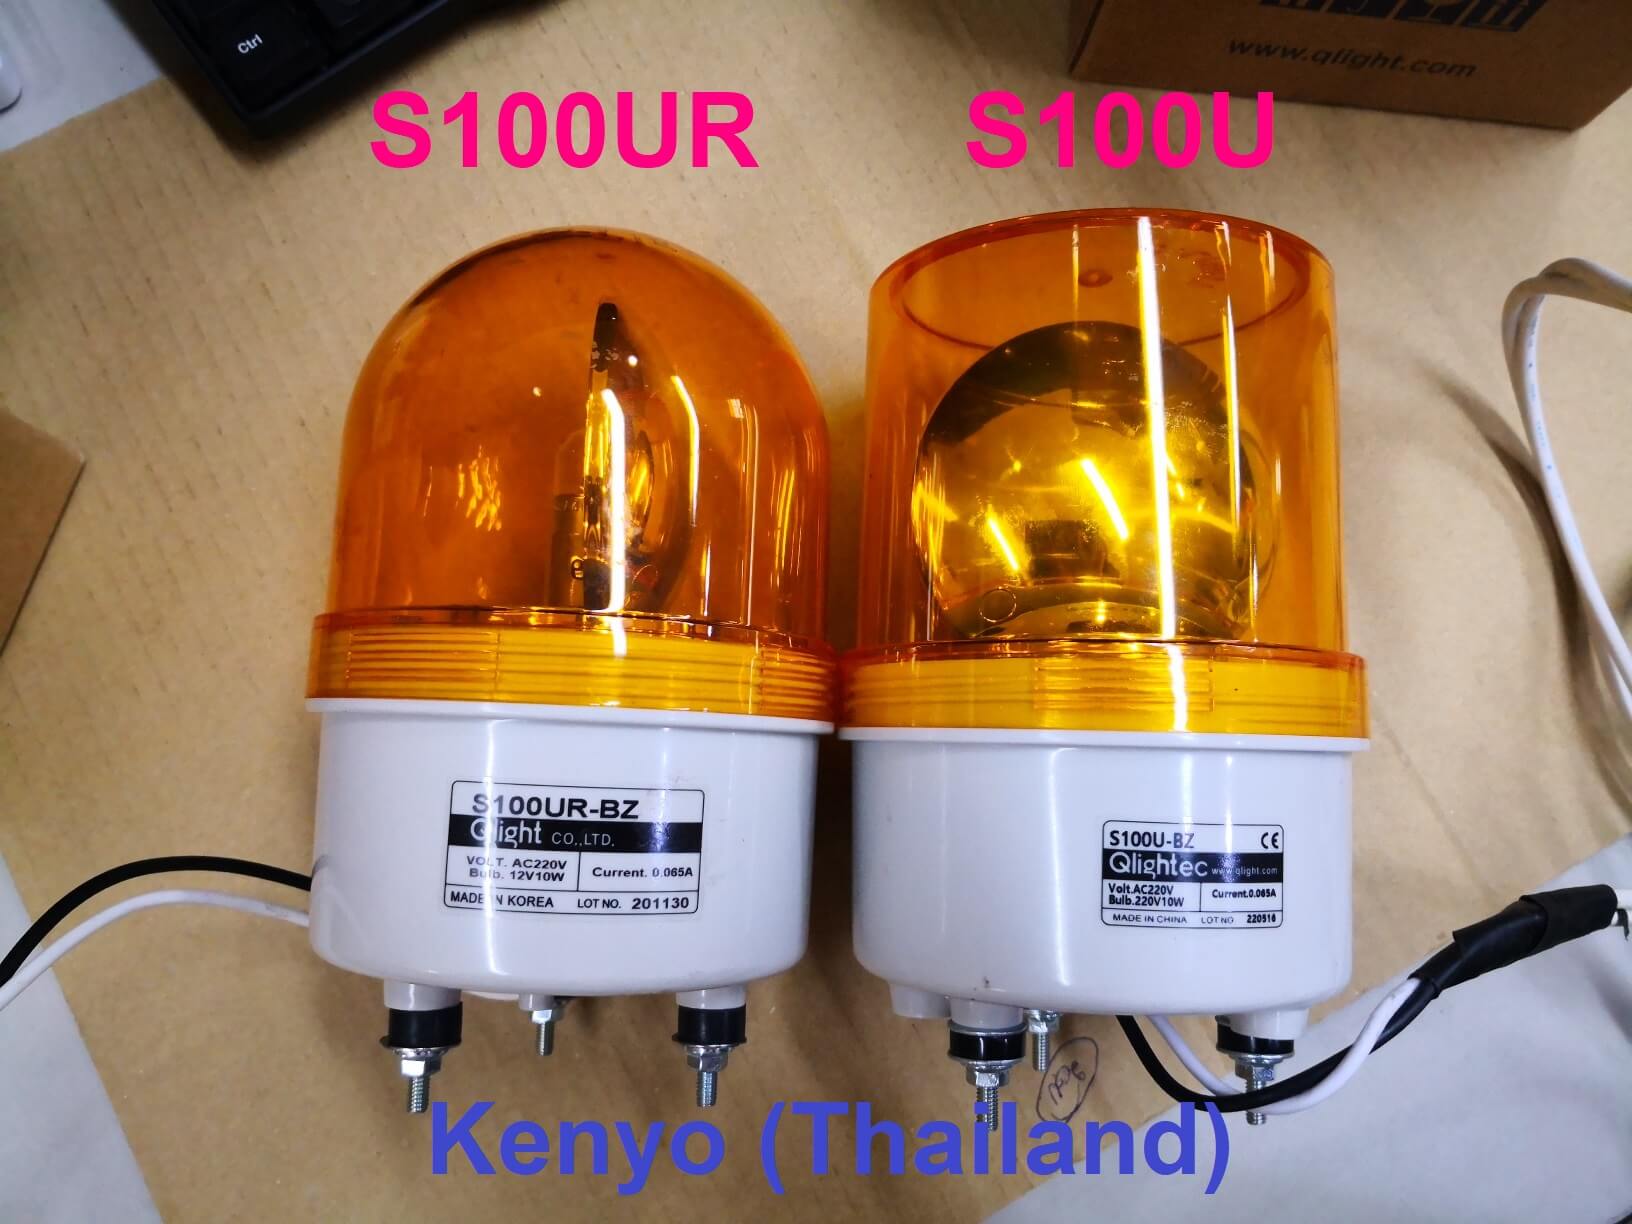 Qlight : S100U and S100UR comparision